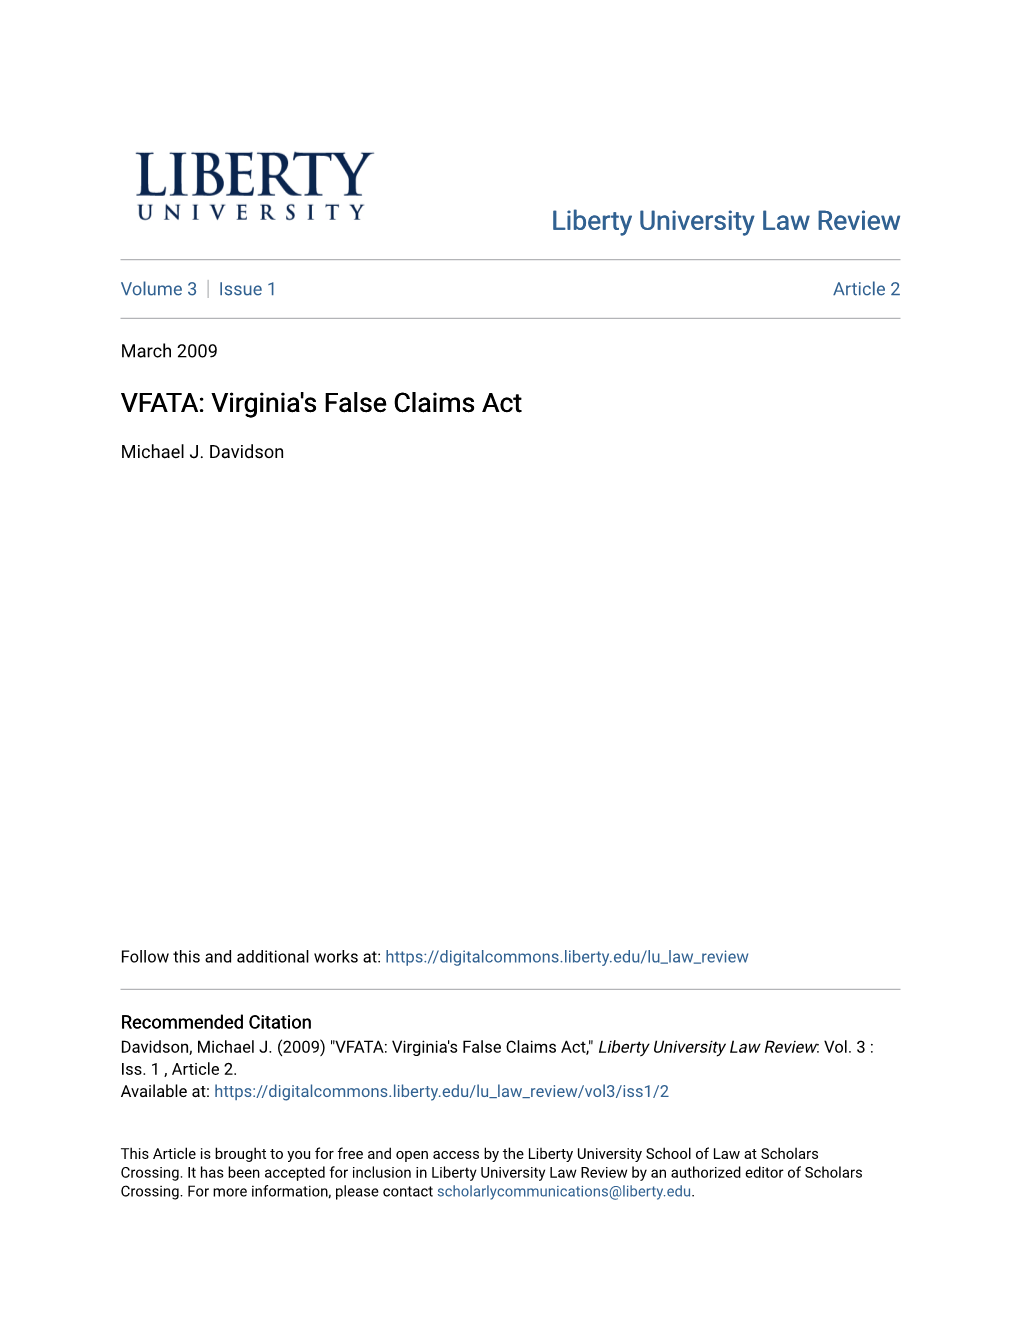 Virginia's False Claims Act